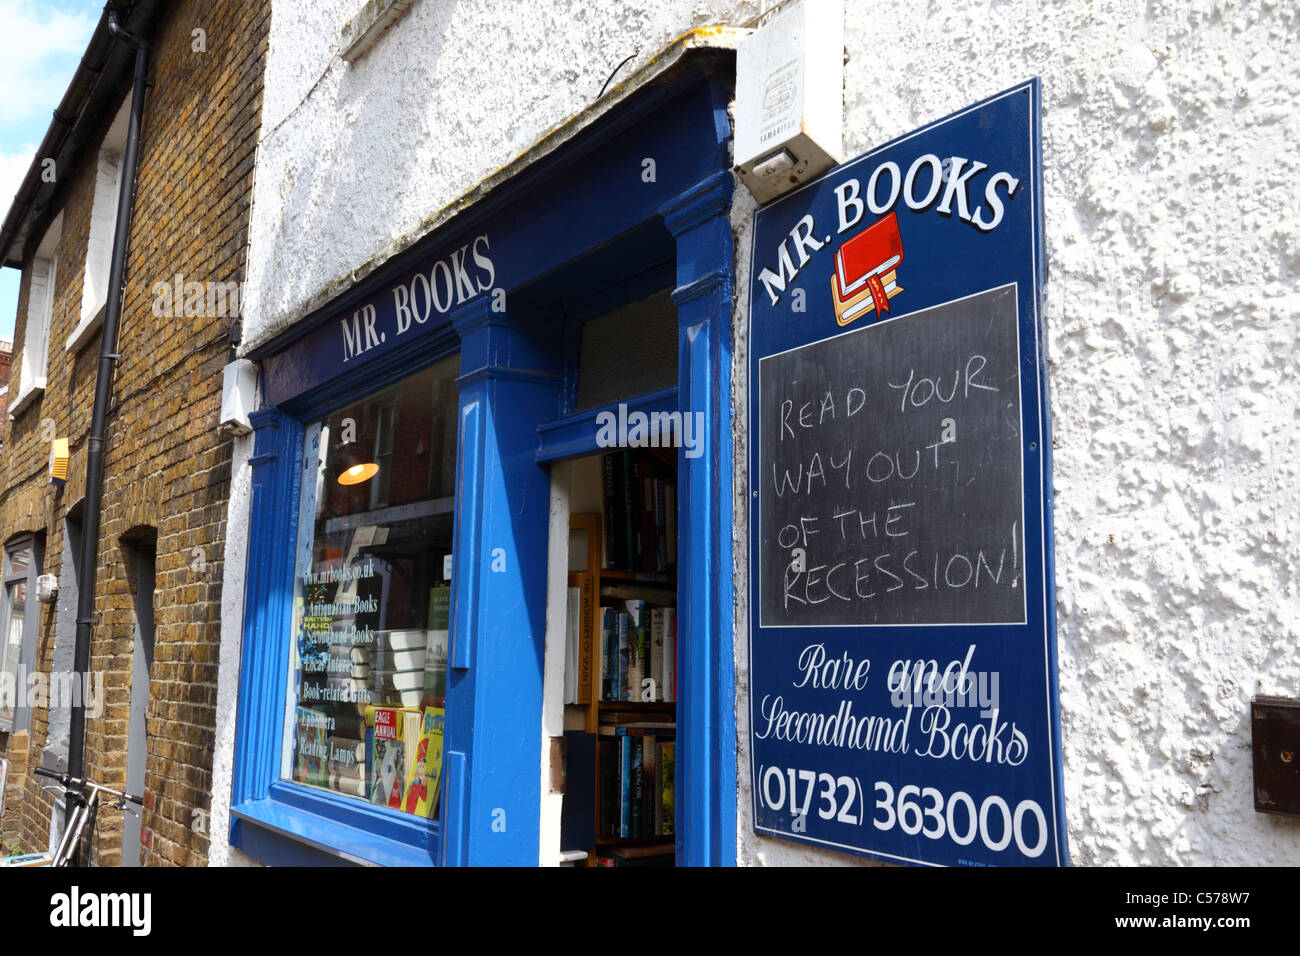 Leer la forma de salir de la recesión a firmar el señor libros de segunda mano librería, Tonbridge, Kent, Inglaterra Foto de stock